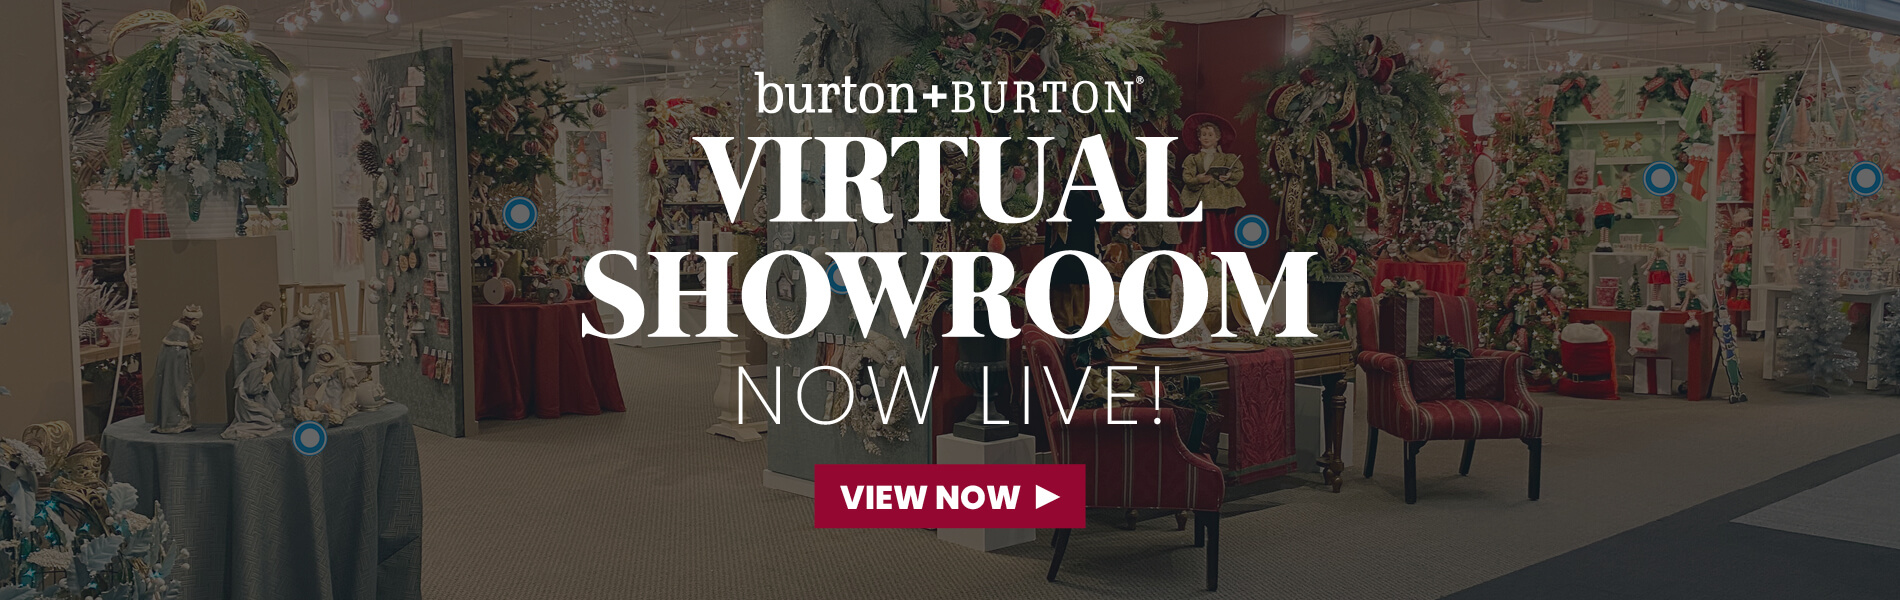 virtual showroom view